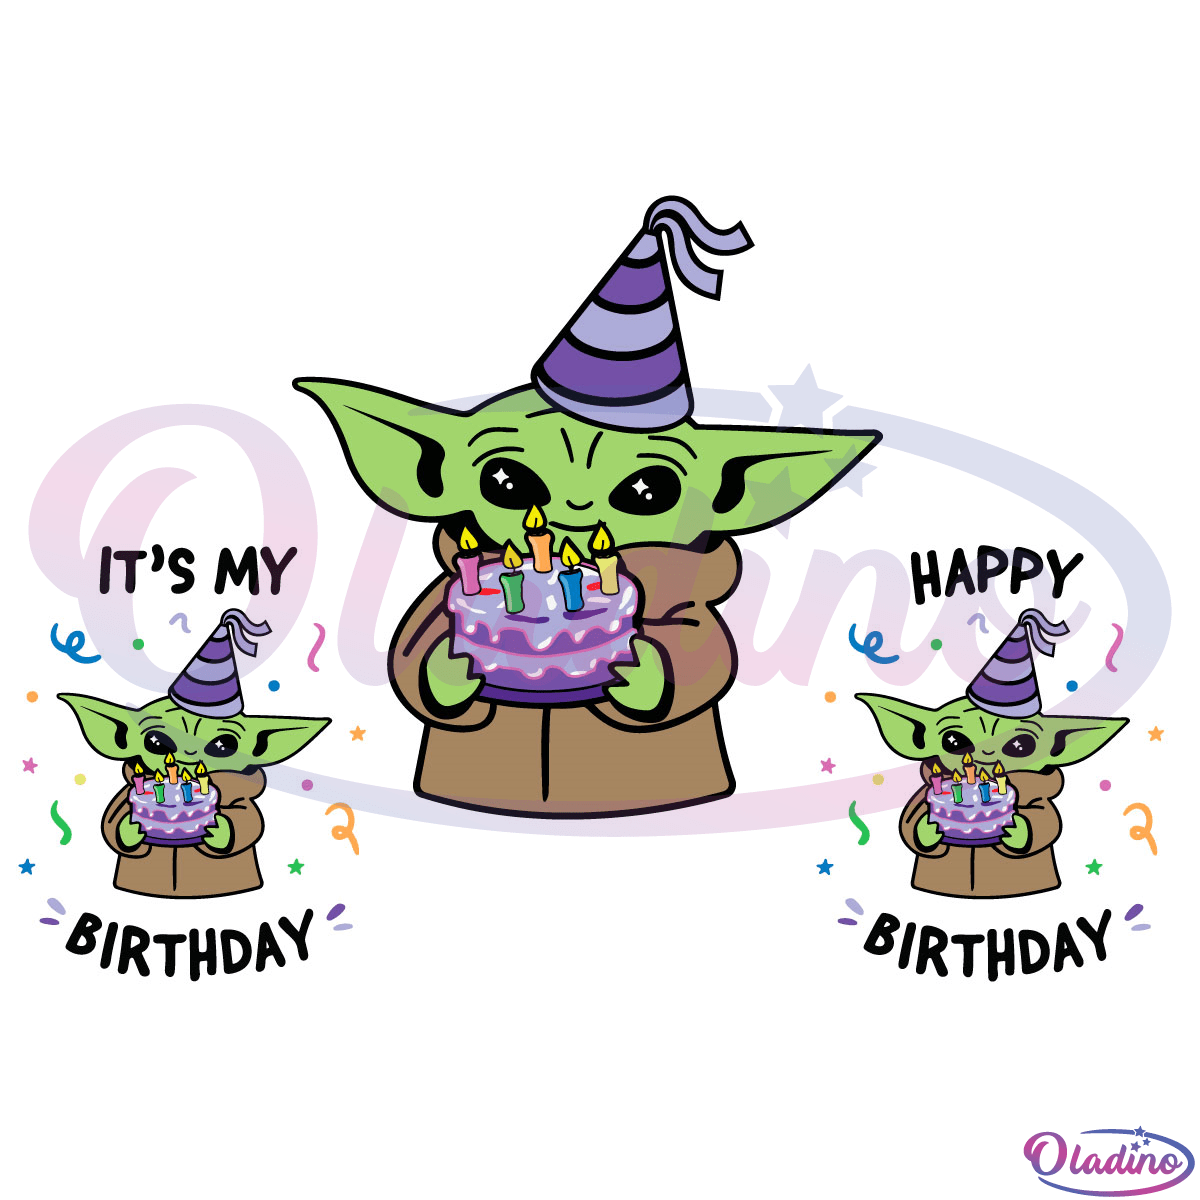 Baby Yoda SVG Digital File, Its My Birthday Svg, Happy Birthday Svg